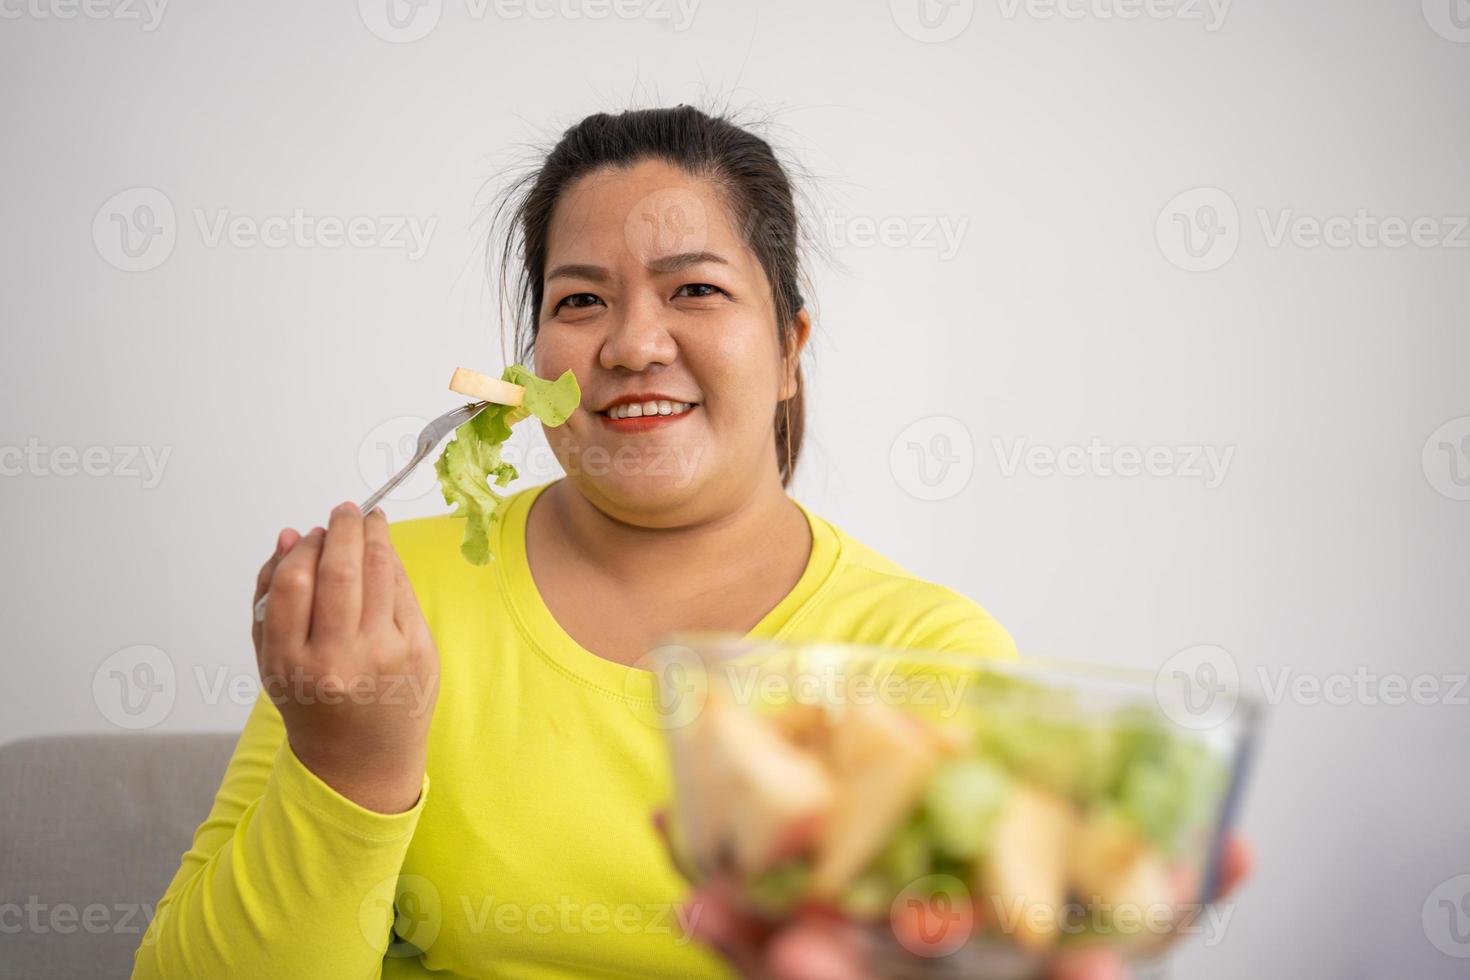 grávida asiática aprenda a cozinhar refeições saudáveis da internet na cozinha, mulheres gordas preparam uma salada de legumes para dieta alimentar e perdem peso. conceito de alimentação saudável foto